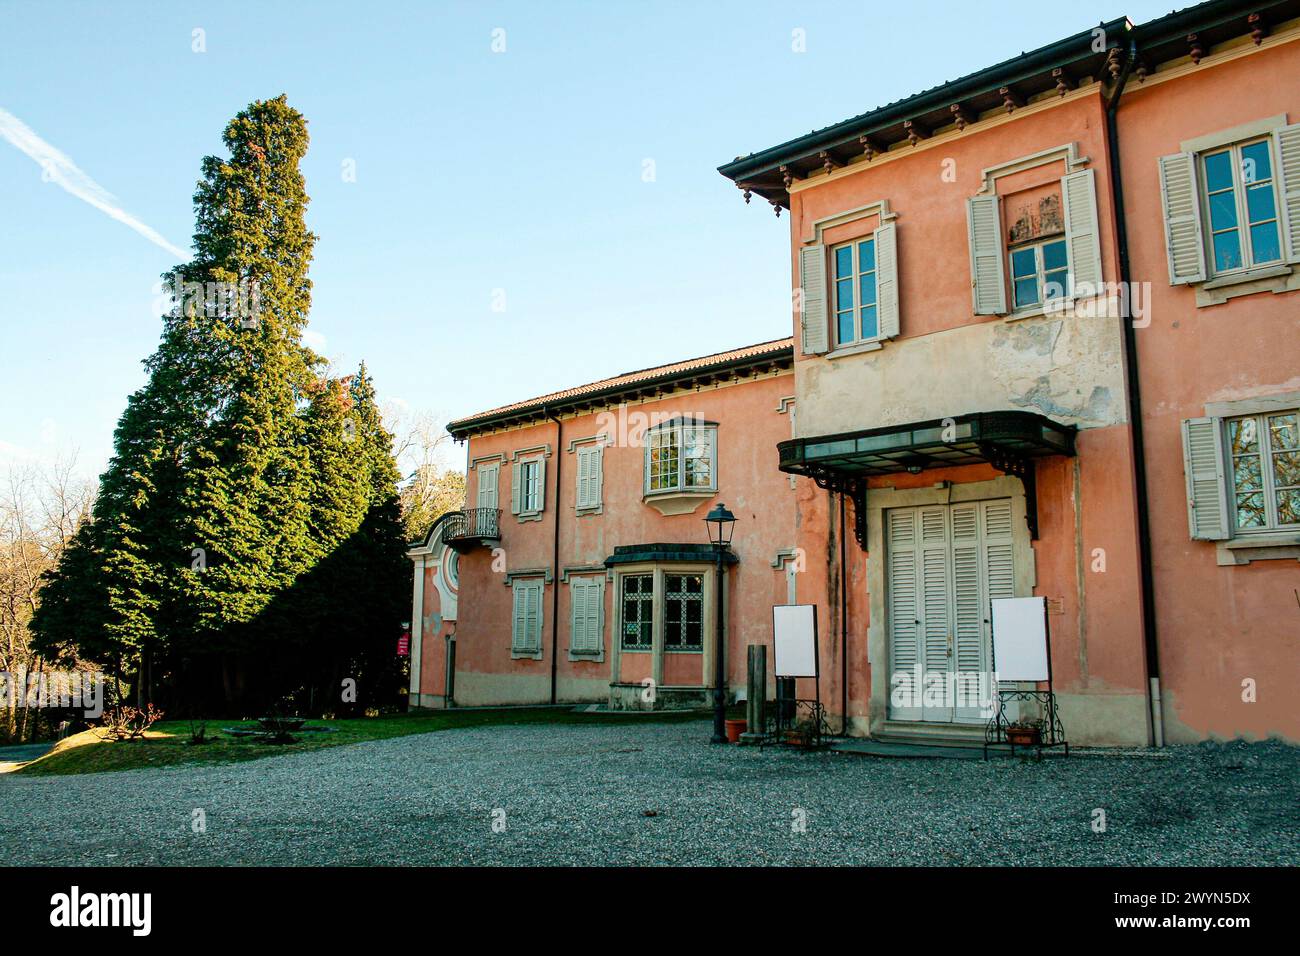 Varese, Lombardei, Italien. Villa Mirabello, auf dem Hügel Mirabello, im Zentrum von Varese gelegen, wurde im 18. Jahrhundert begonnen und in seiner heutigen Form vom Ingenieur Clericetti (1843) definiert. Seit 1949 ist es Sitz der Bürgermuseen von Varese. Stockfoto